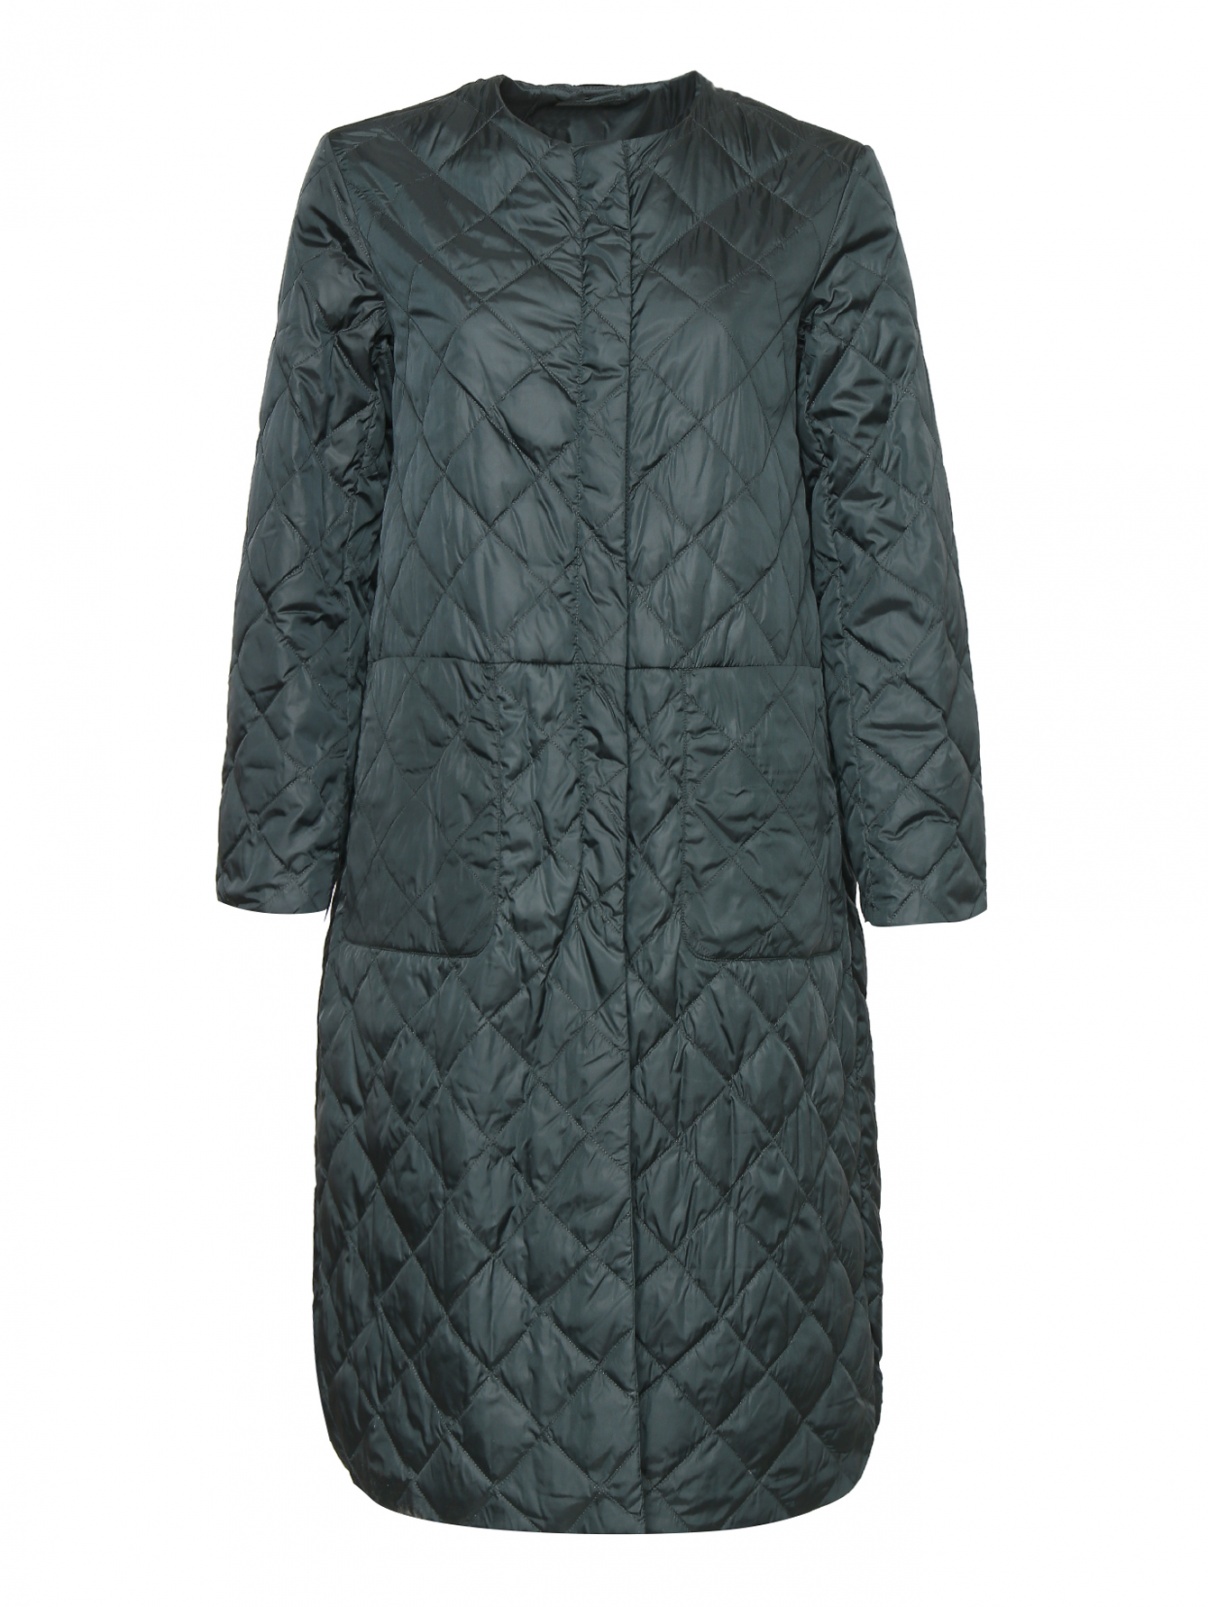 Макс Мара стеганое пальто модель 64945519 Extra warm